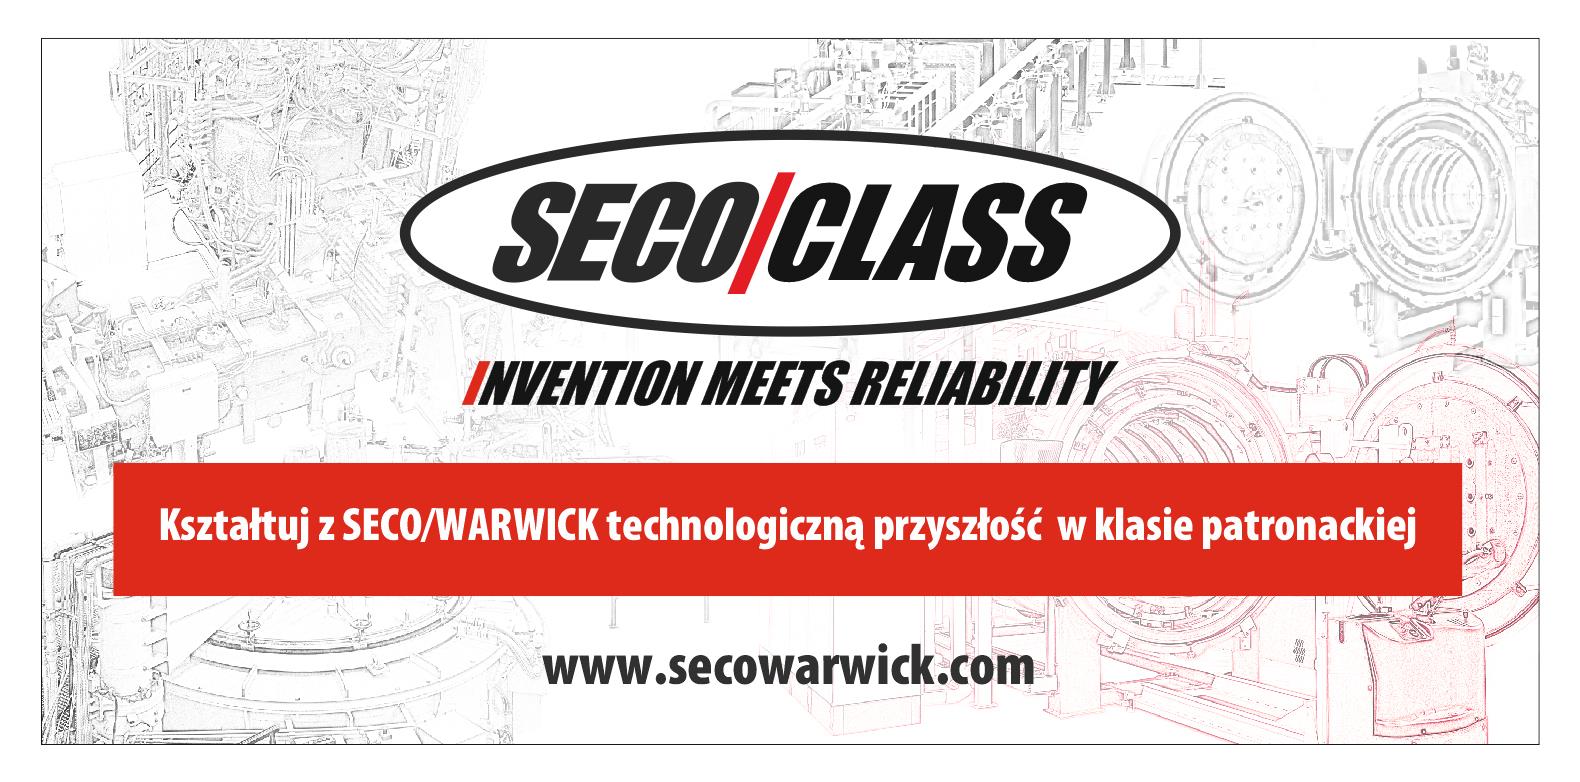 Global technological giant of Świebodzin in ZSEiS